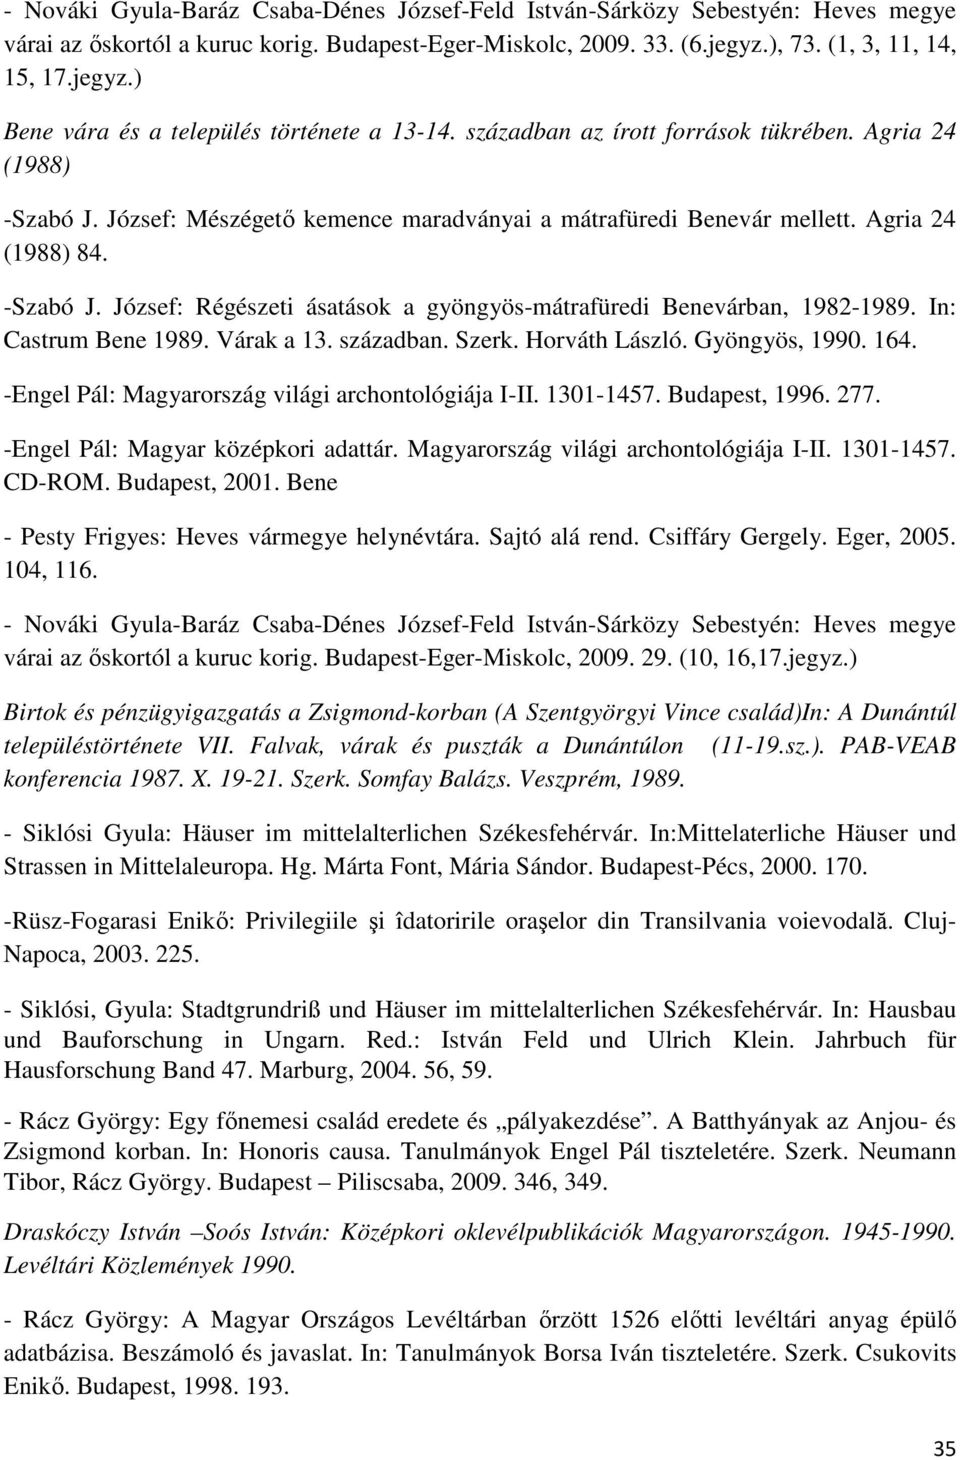 József: Mészégetı kemence maradványai a mátrafüredi Benevár mellett. Agria 24 (1988) 84. -Szabó J. József: Régészeti ásatások a gyöngyös-mátrafüredi Benevárban, 1982-1989. In: Castrum Bene 1989.